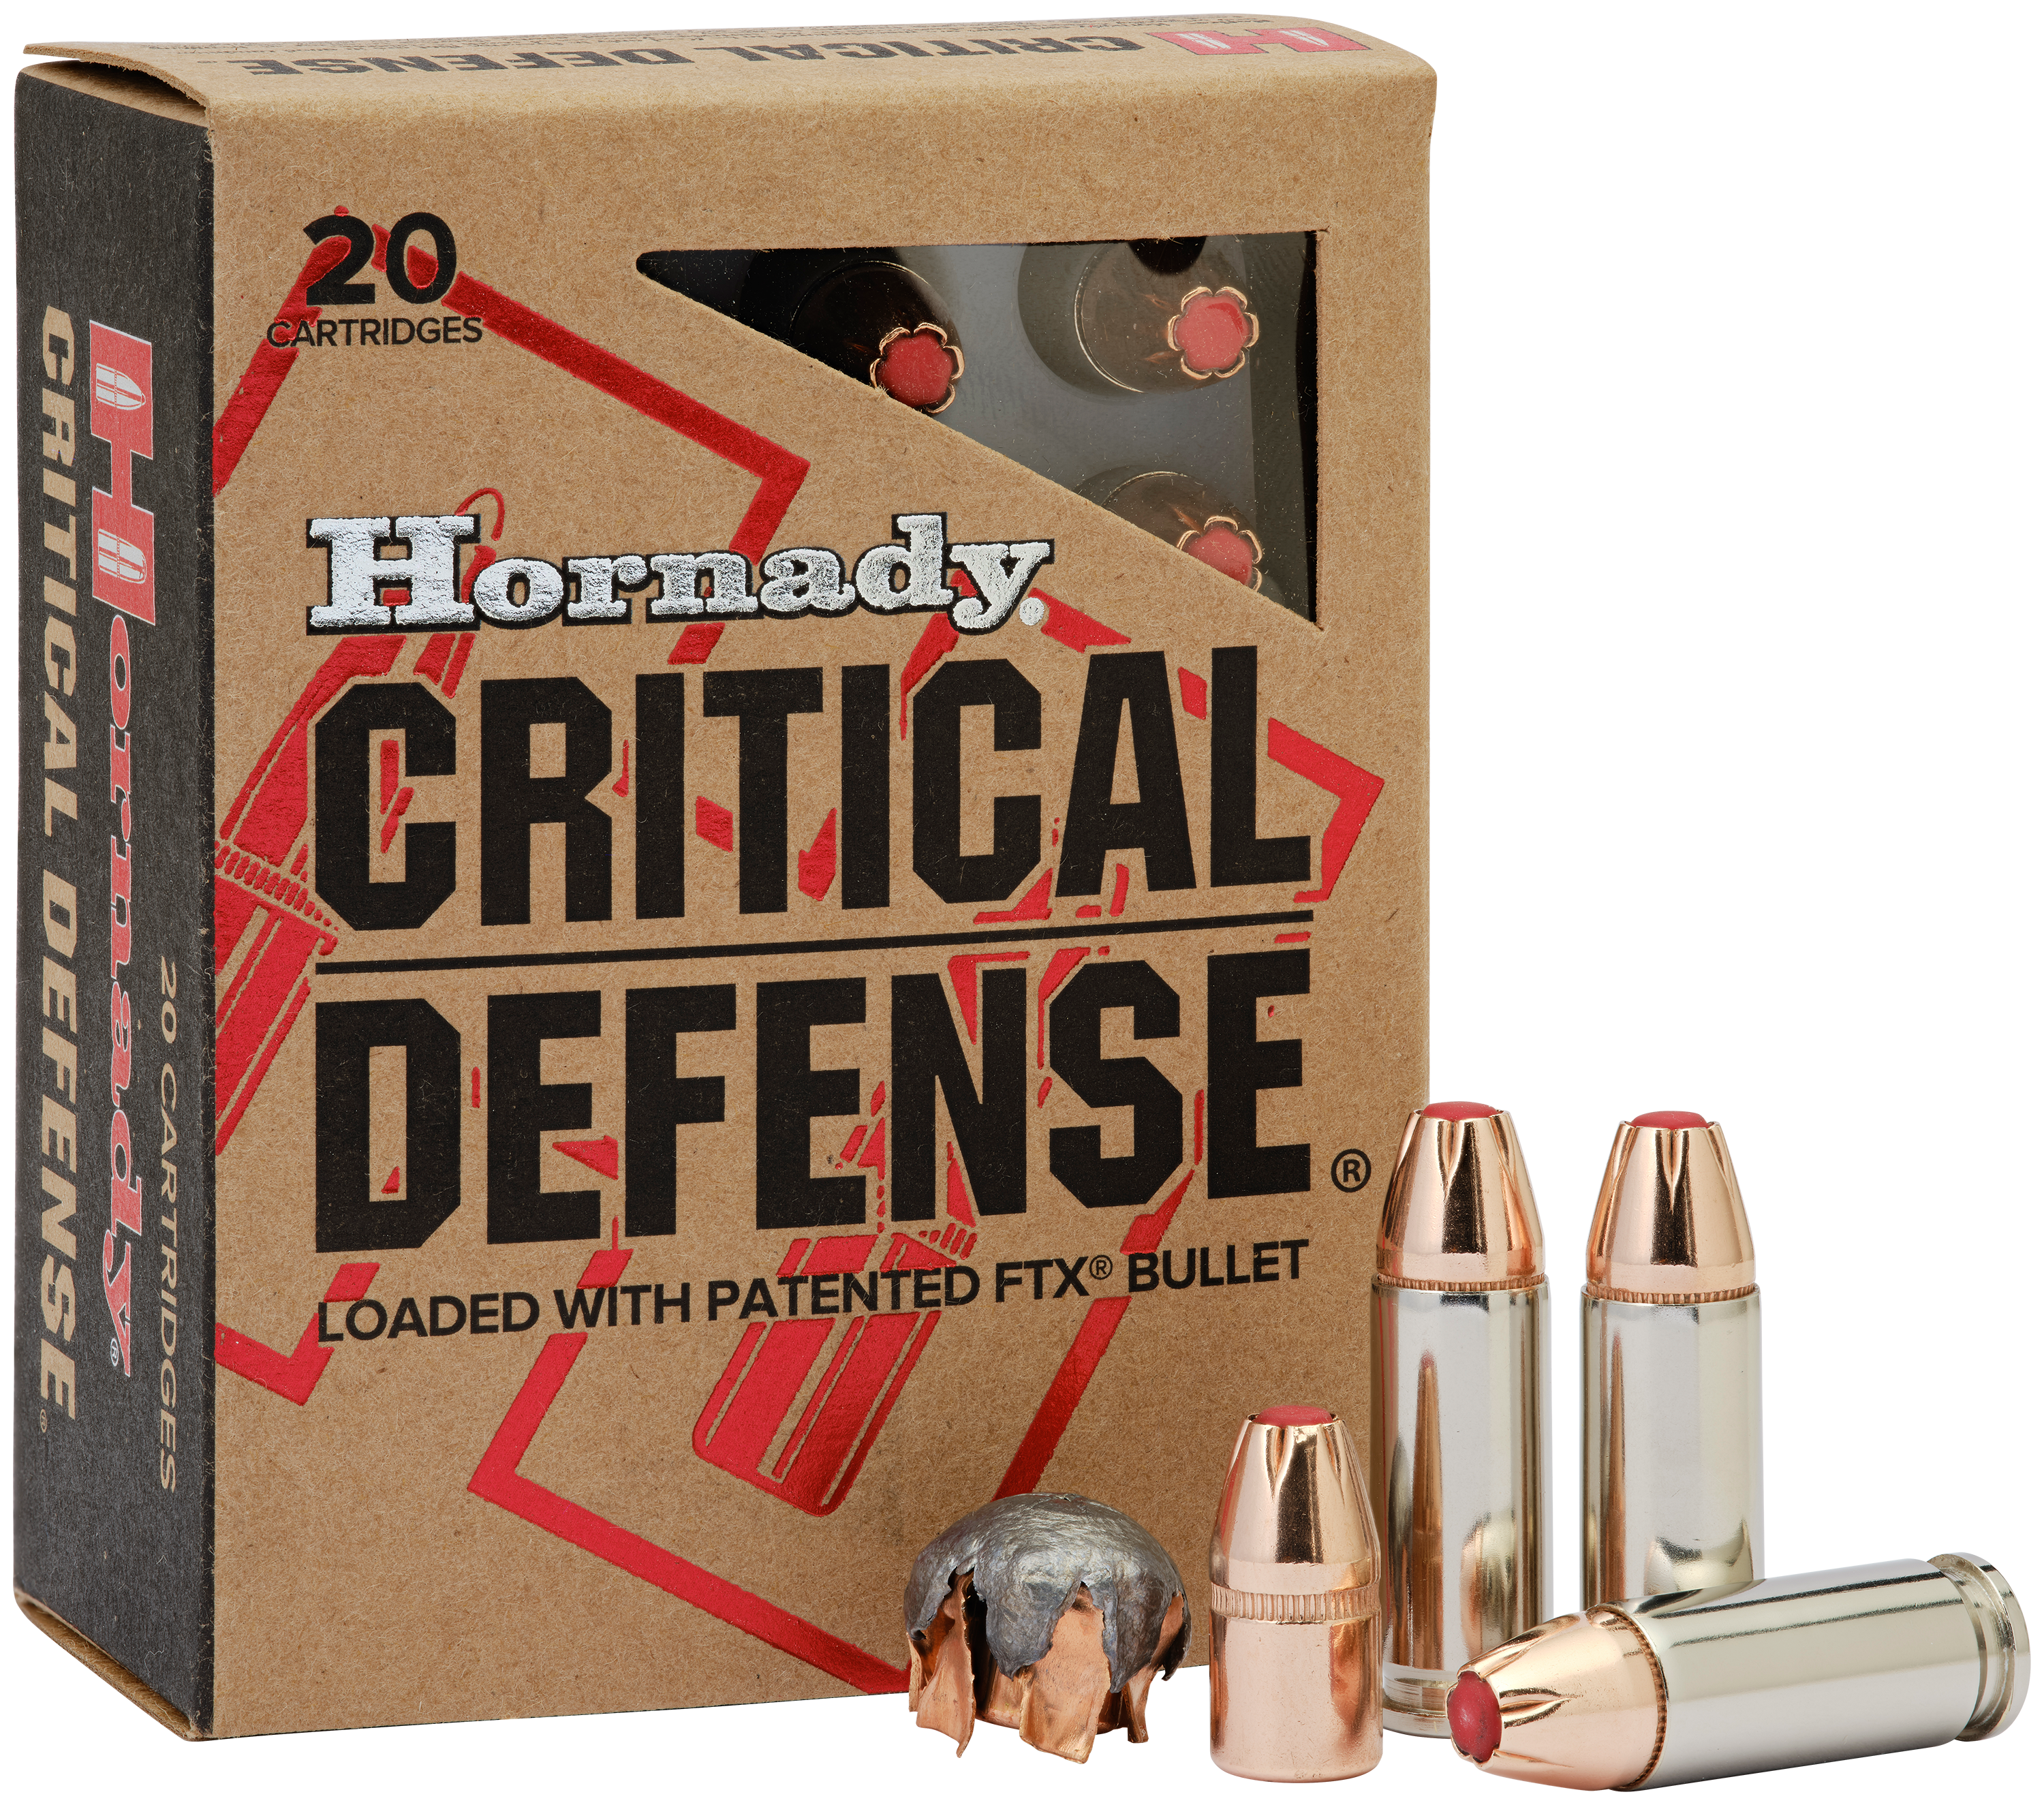 Hornady Critical Defense Handgun Ammo - .30 Super Carry - 100 Grain - 20 Rounds